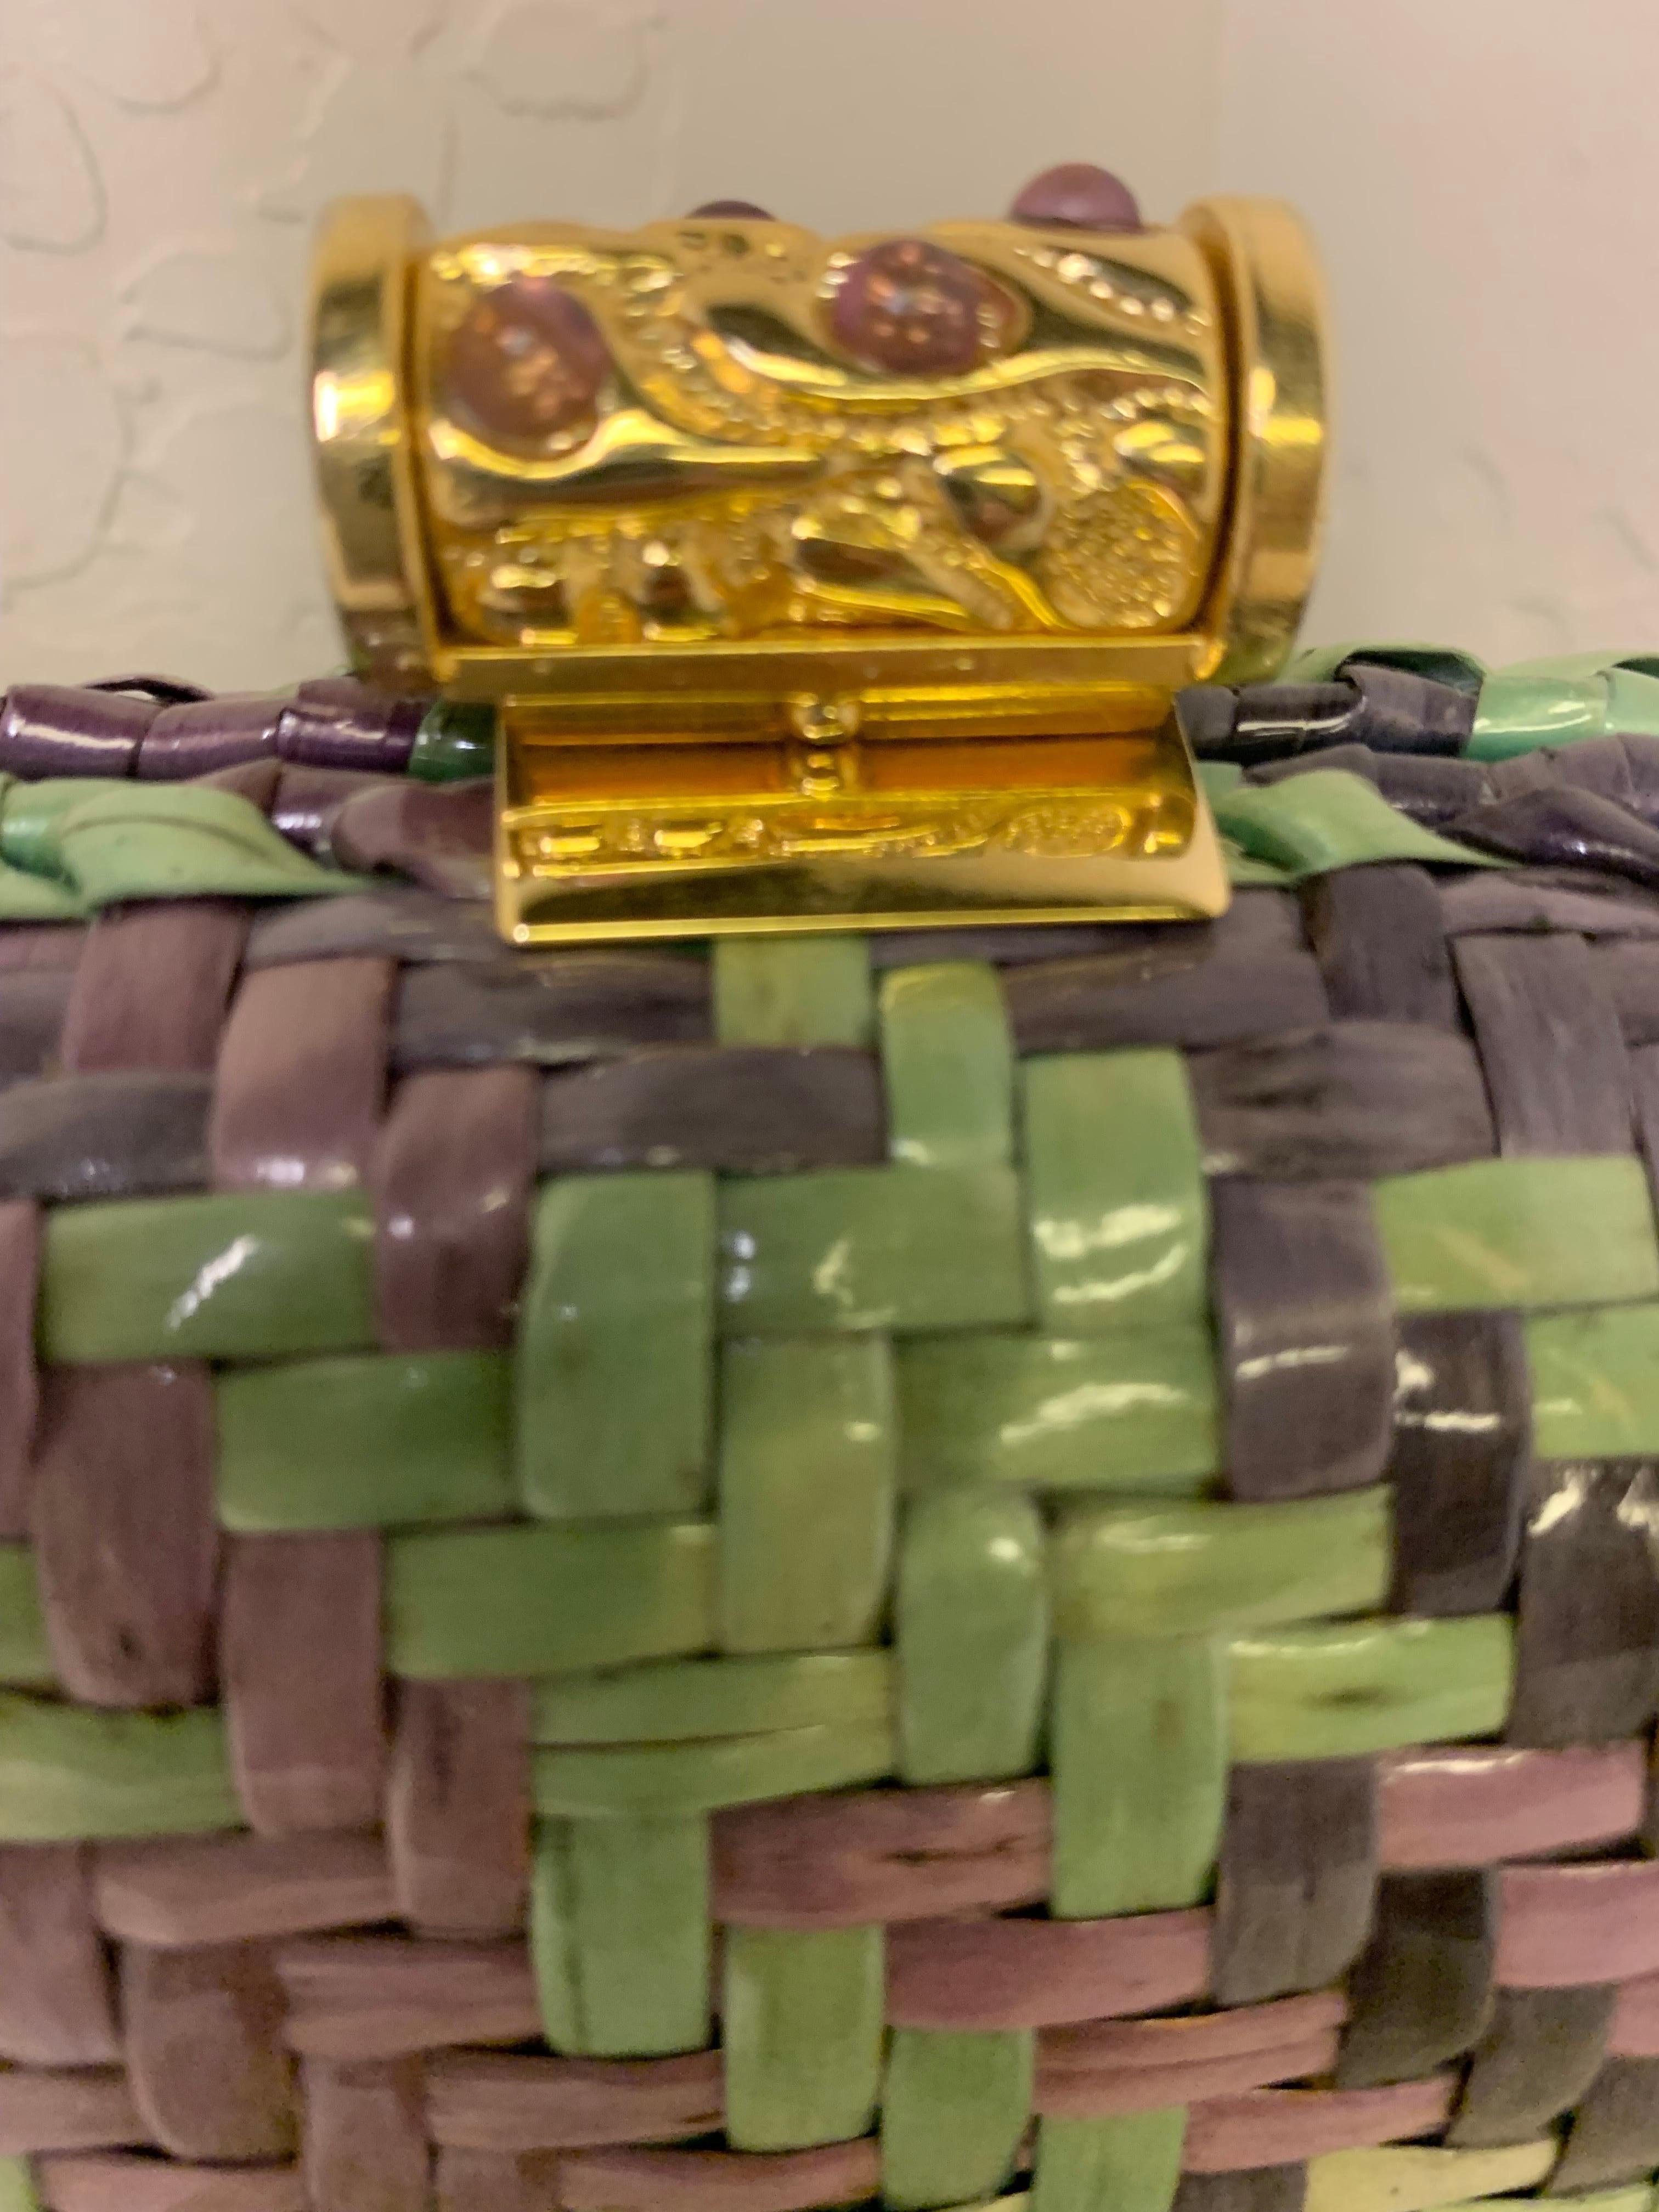 Eine schicke 1980er Rodo Cabrio-Schulterriemen / Clutch-Handtasche in einem ungewöhnlichen karierten gewebtes Muster von Lavendel, lila, mintgrün und Pistazie! Goldfarbener Verschluss und Schulterriemen aus Kette, der als Clutch verwendet werden